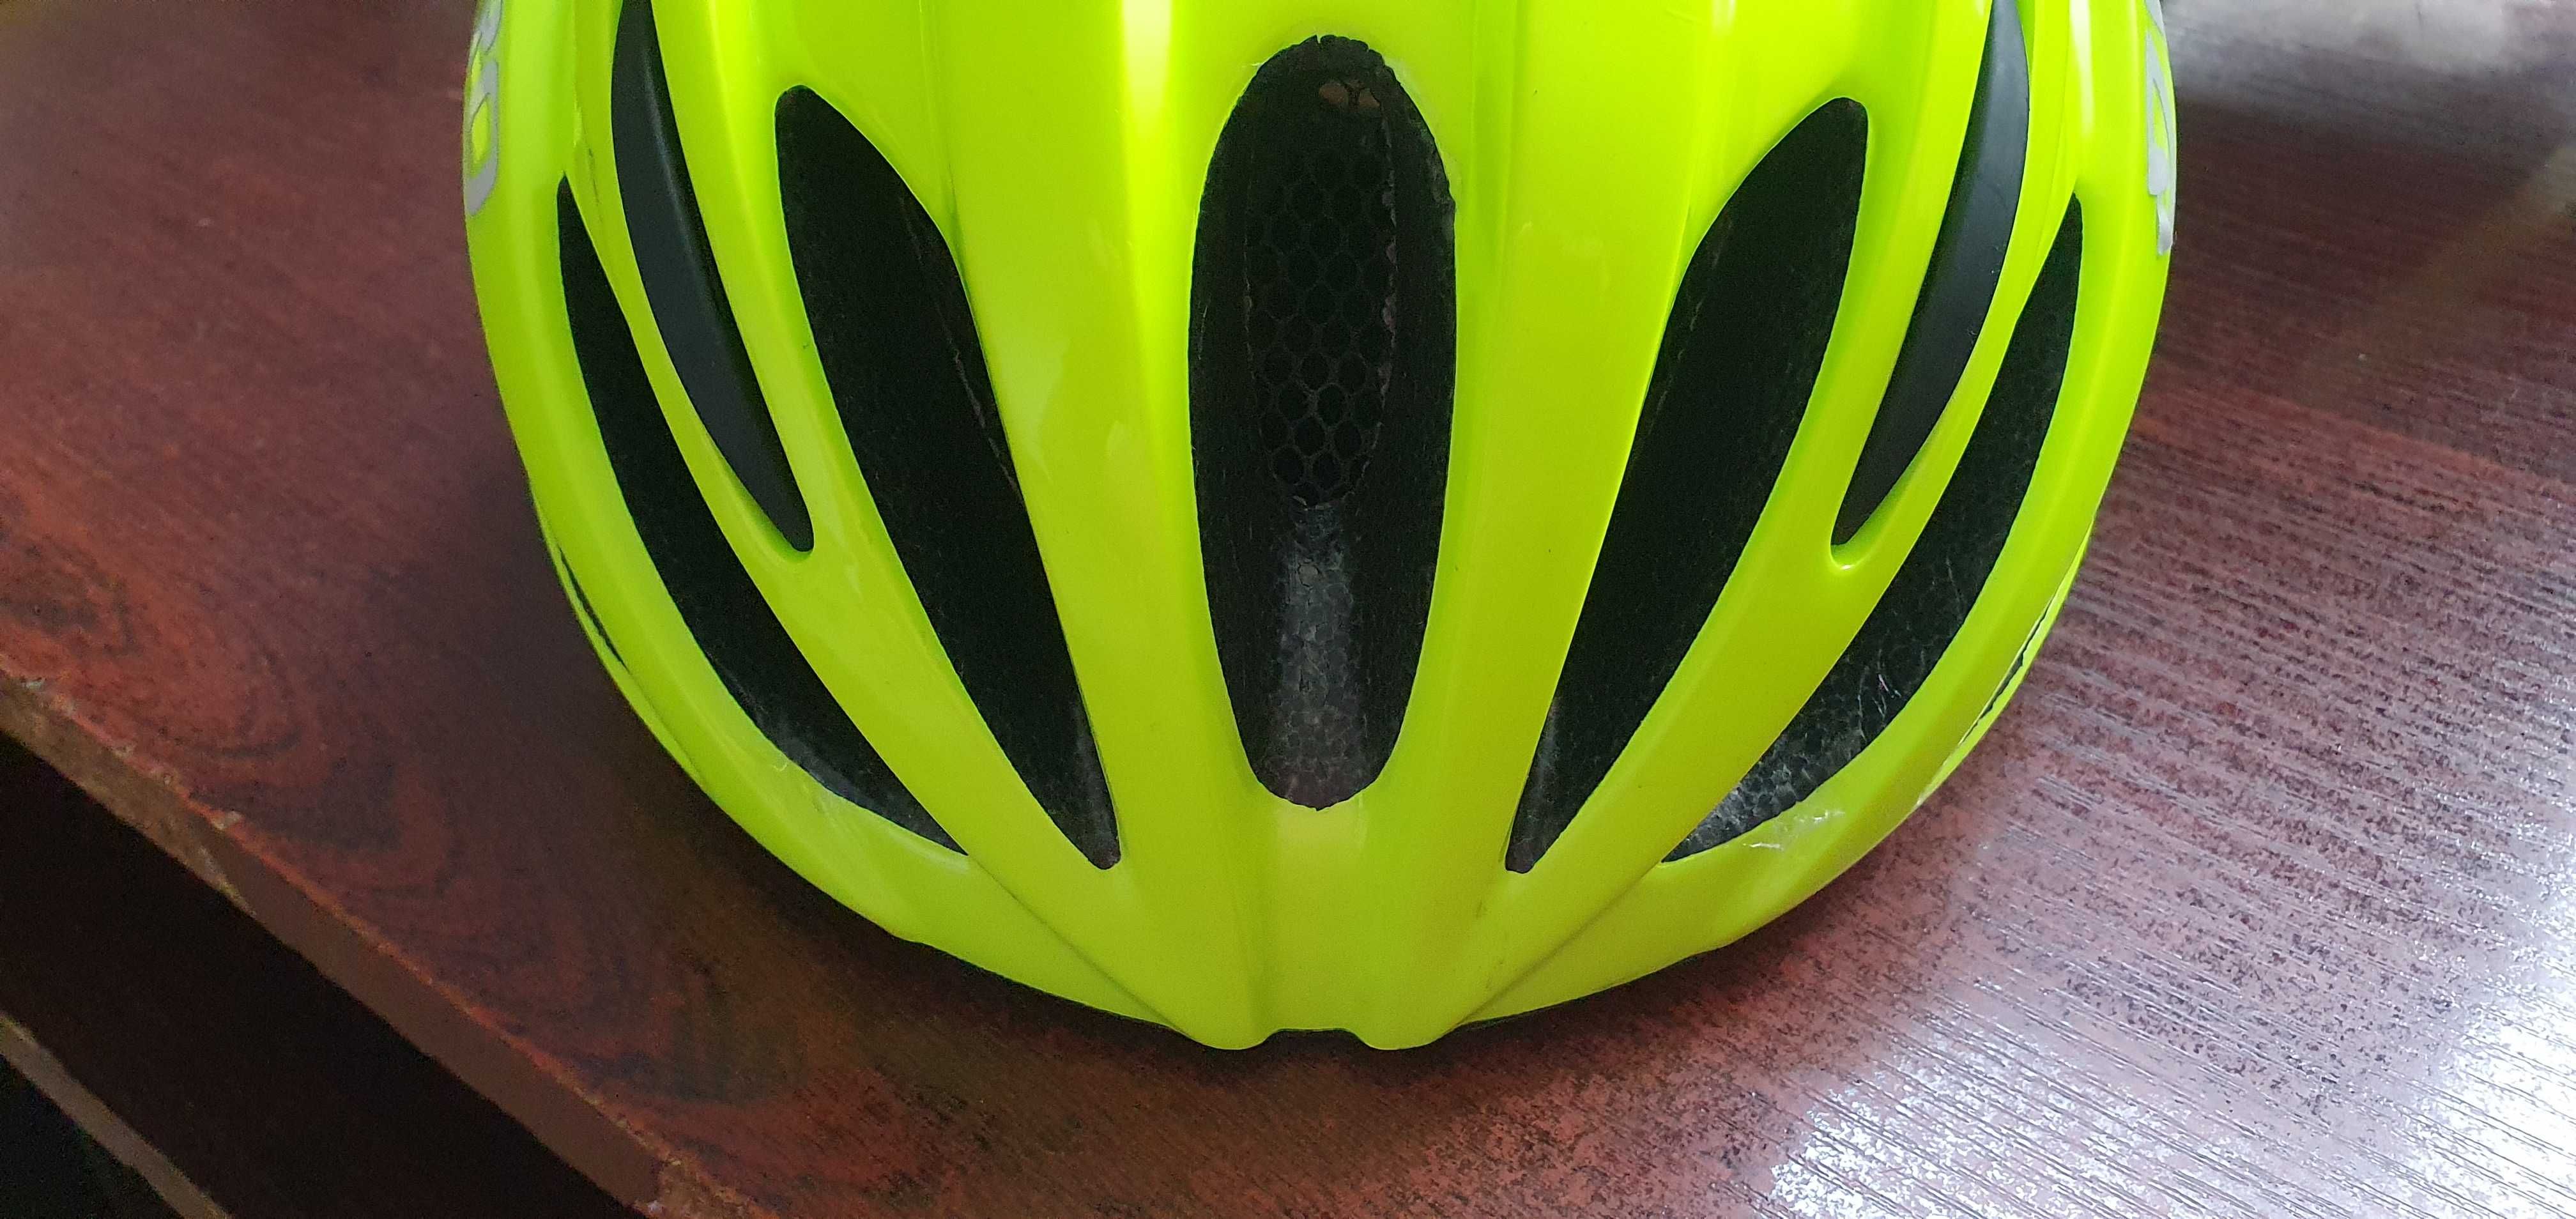 Kask  rowerowy Giro  szosa 54-61 żółty  314g